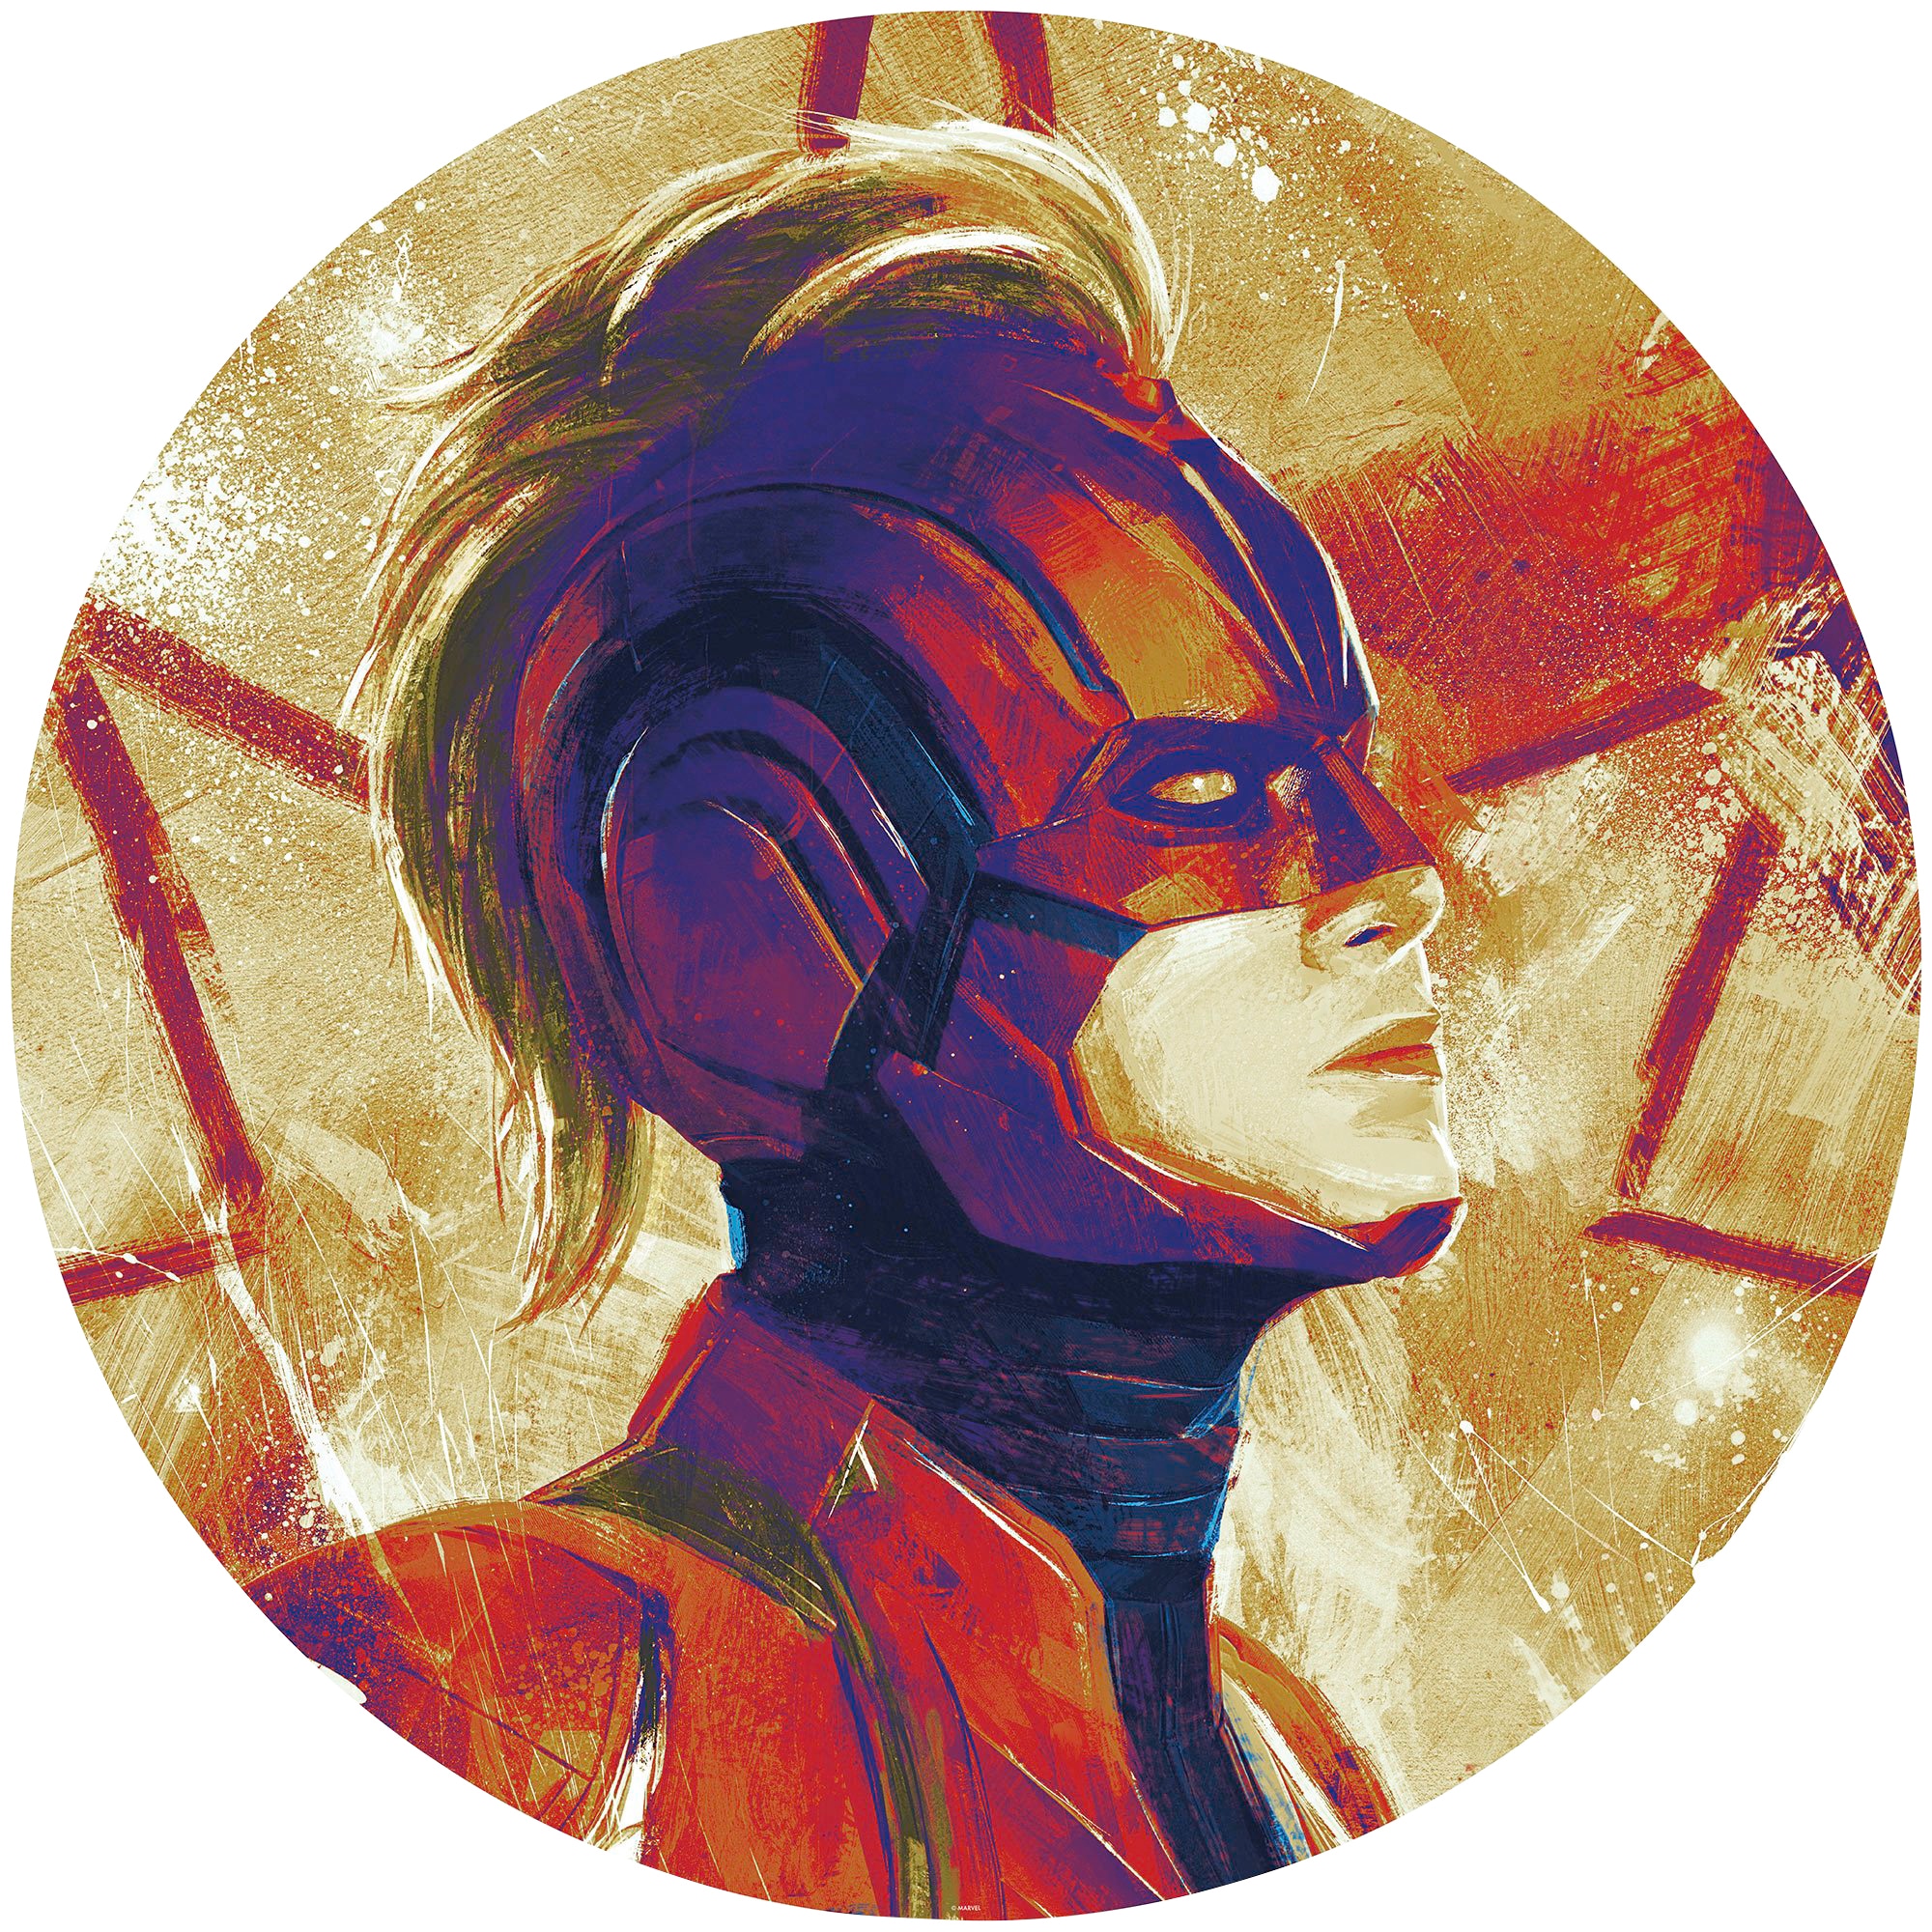 Fototapete »Avengers Painting Captain Marvel Helmet«, 125x125 cm (Breite x Höhe), rund...